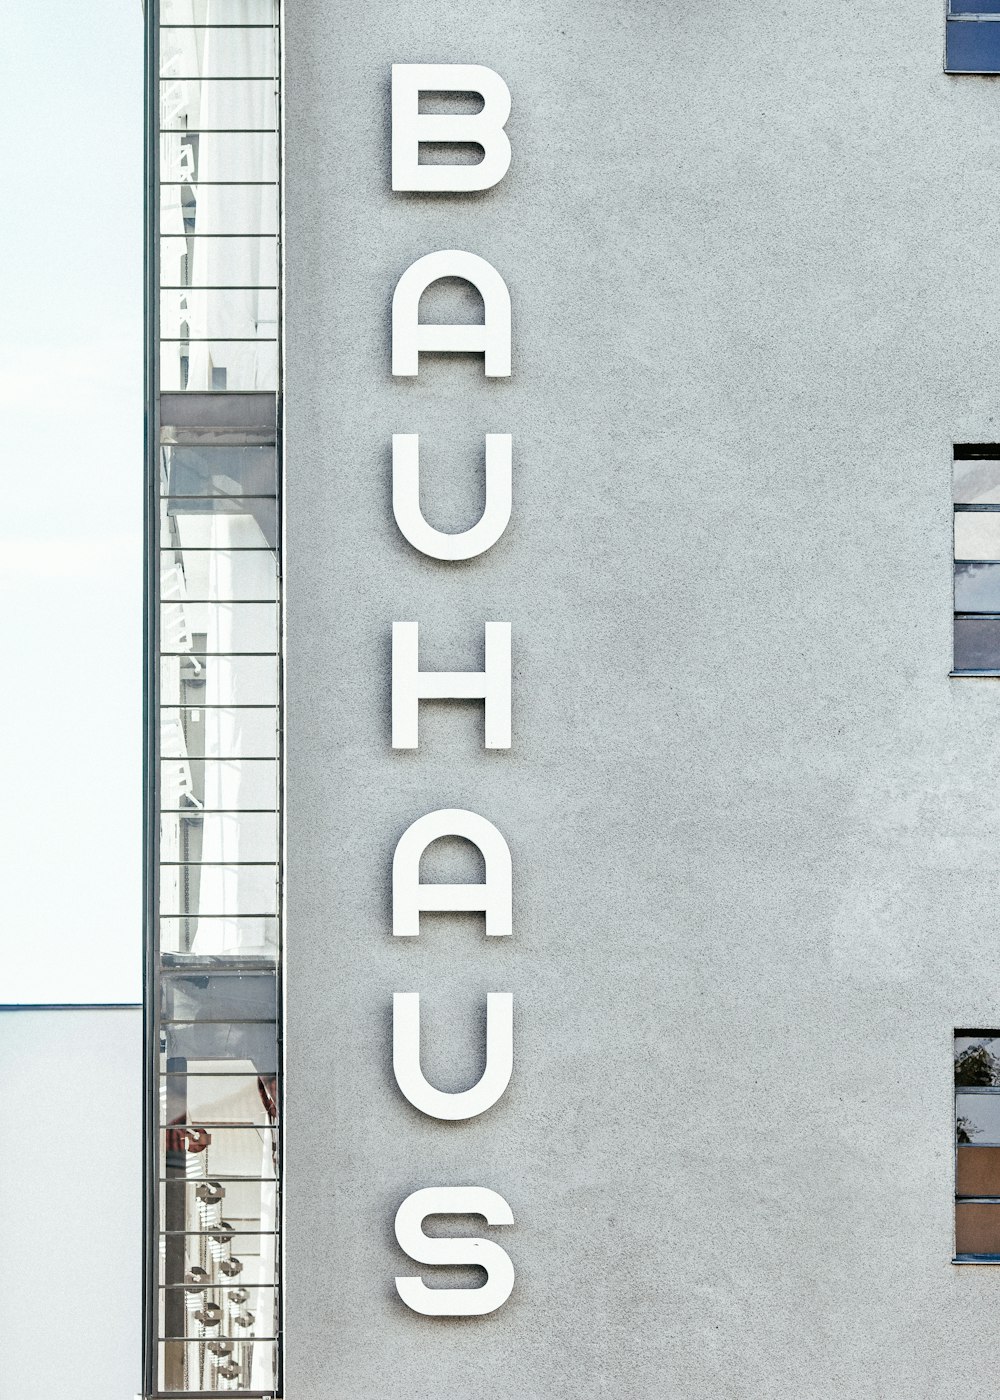 Bauhaus concrete apartment building